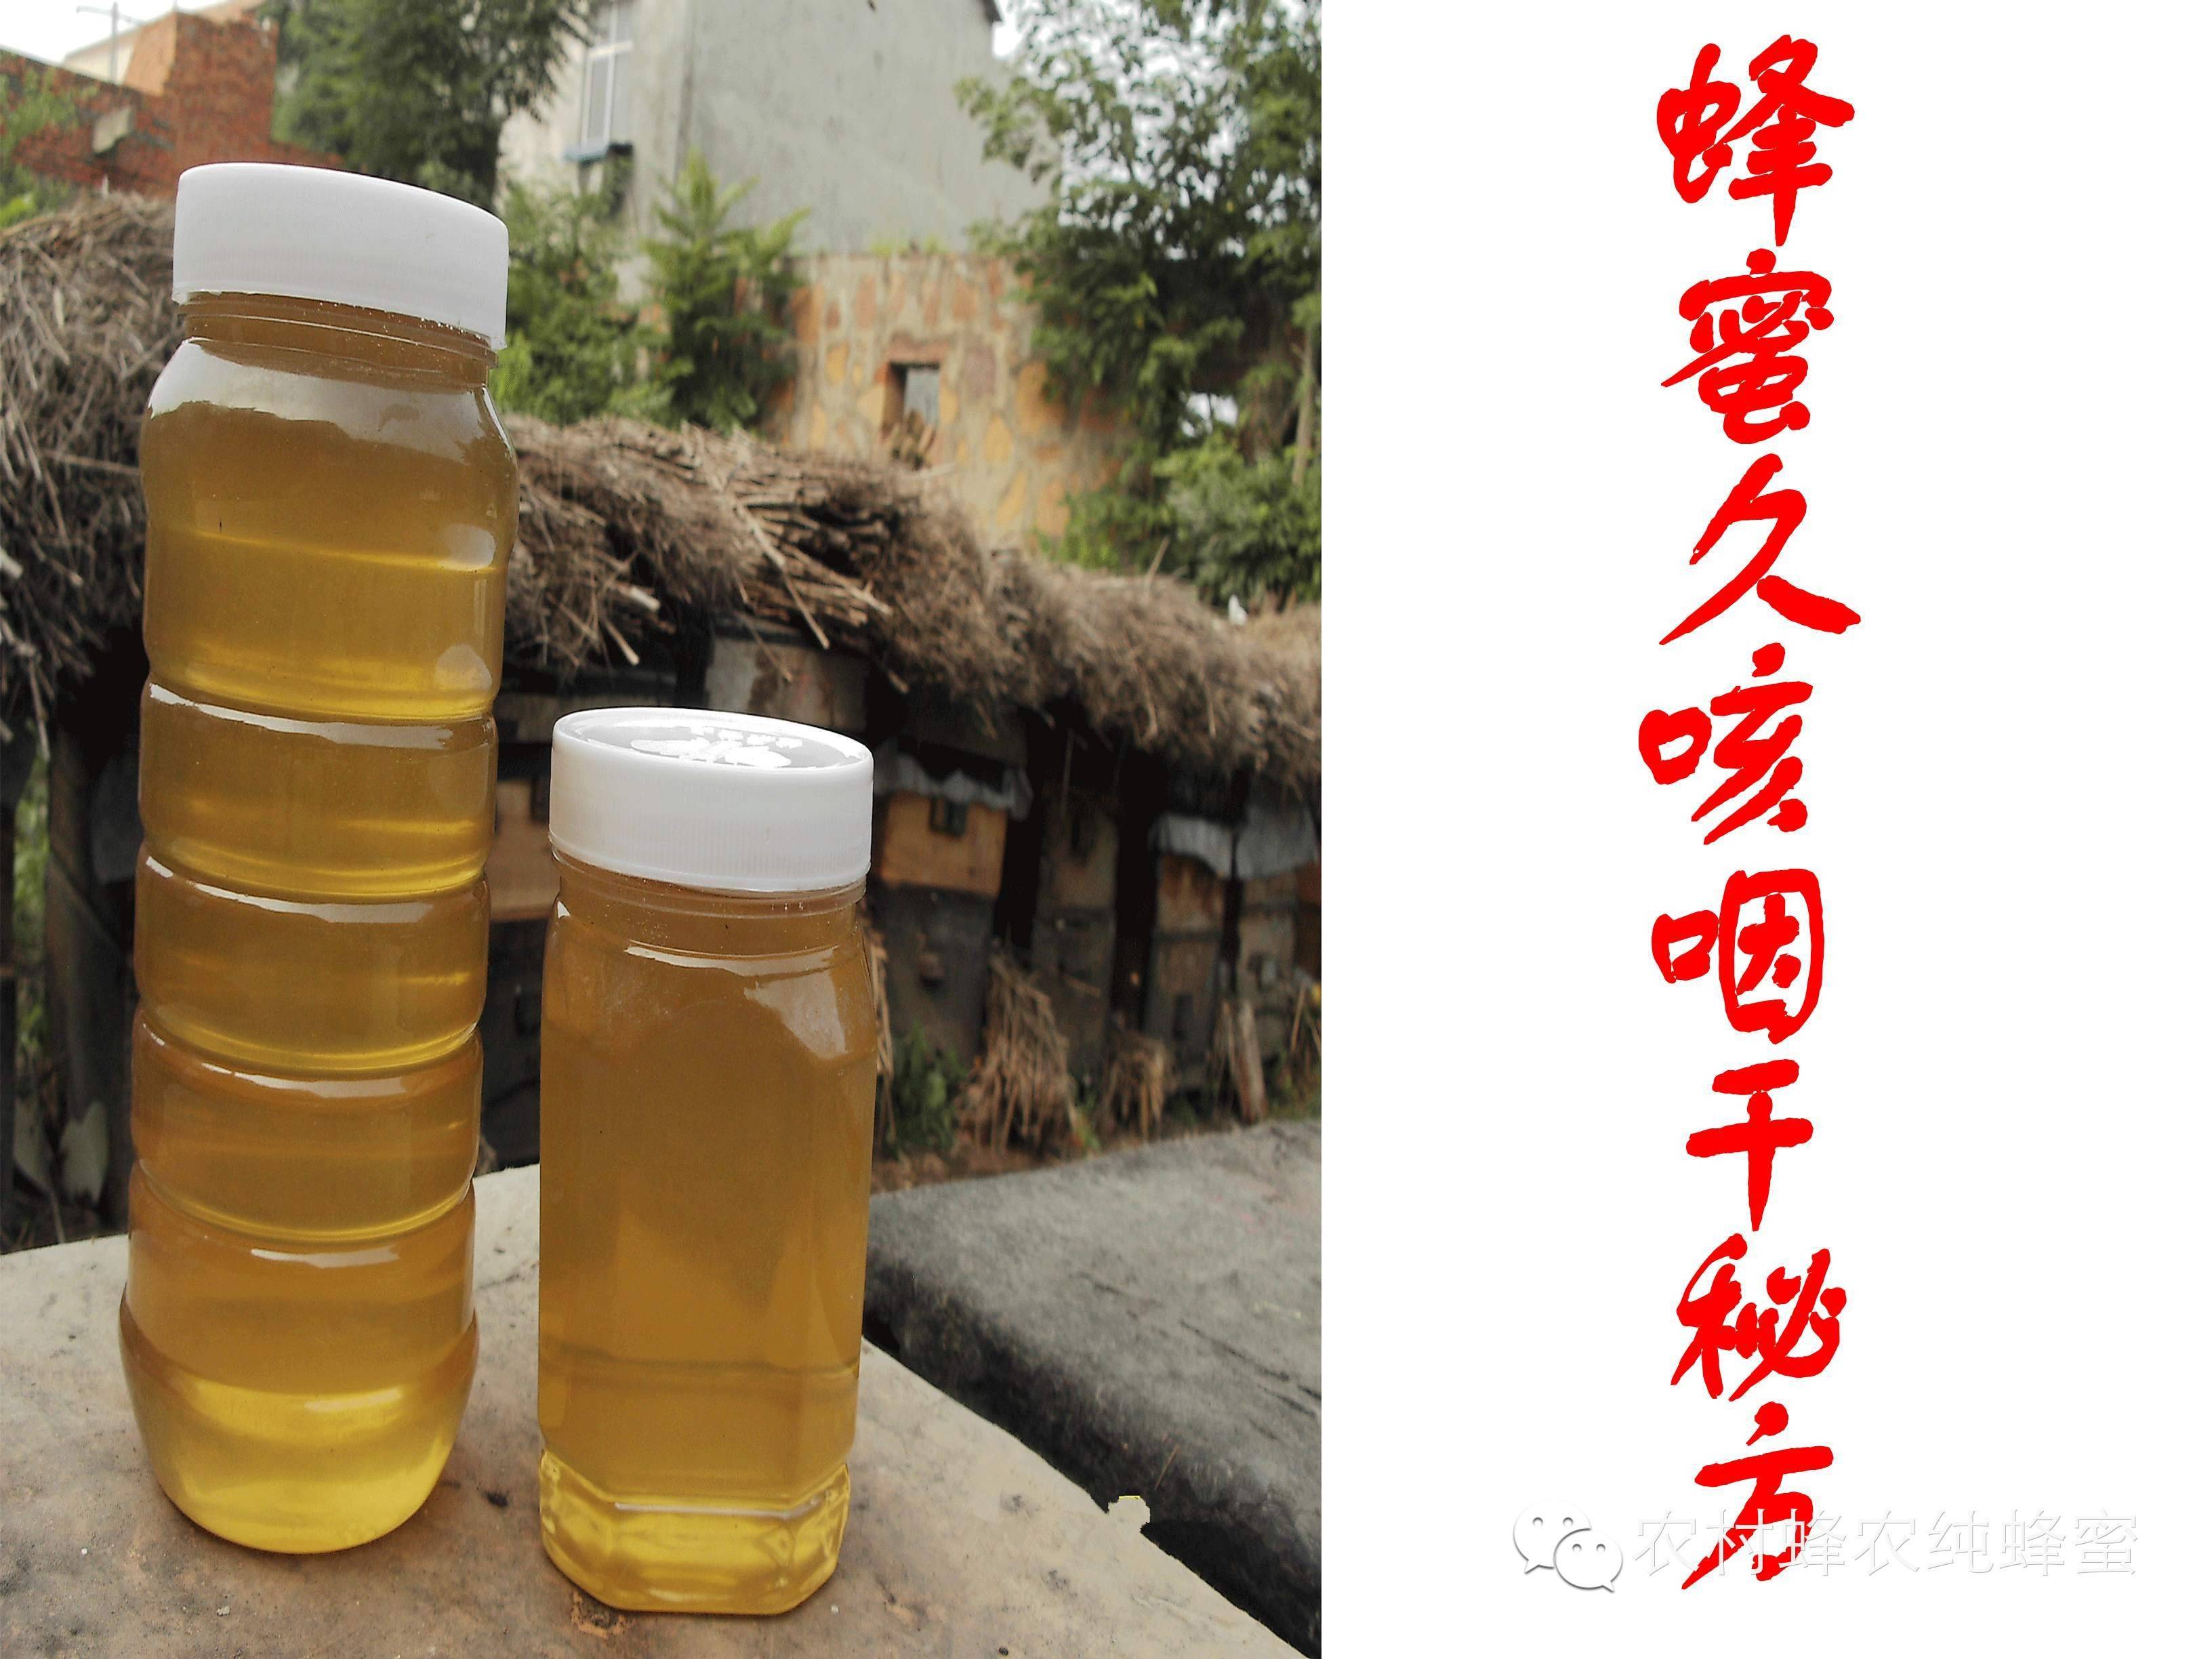 洋槐蜂蜜多少钱一瓶 蜂蜜哪里有卖 蜂蜜鸡蛋 黄瓜面膜 蜂蜜祛斑法